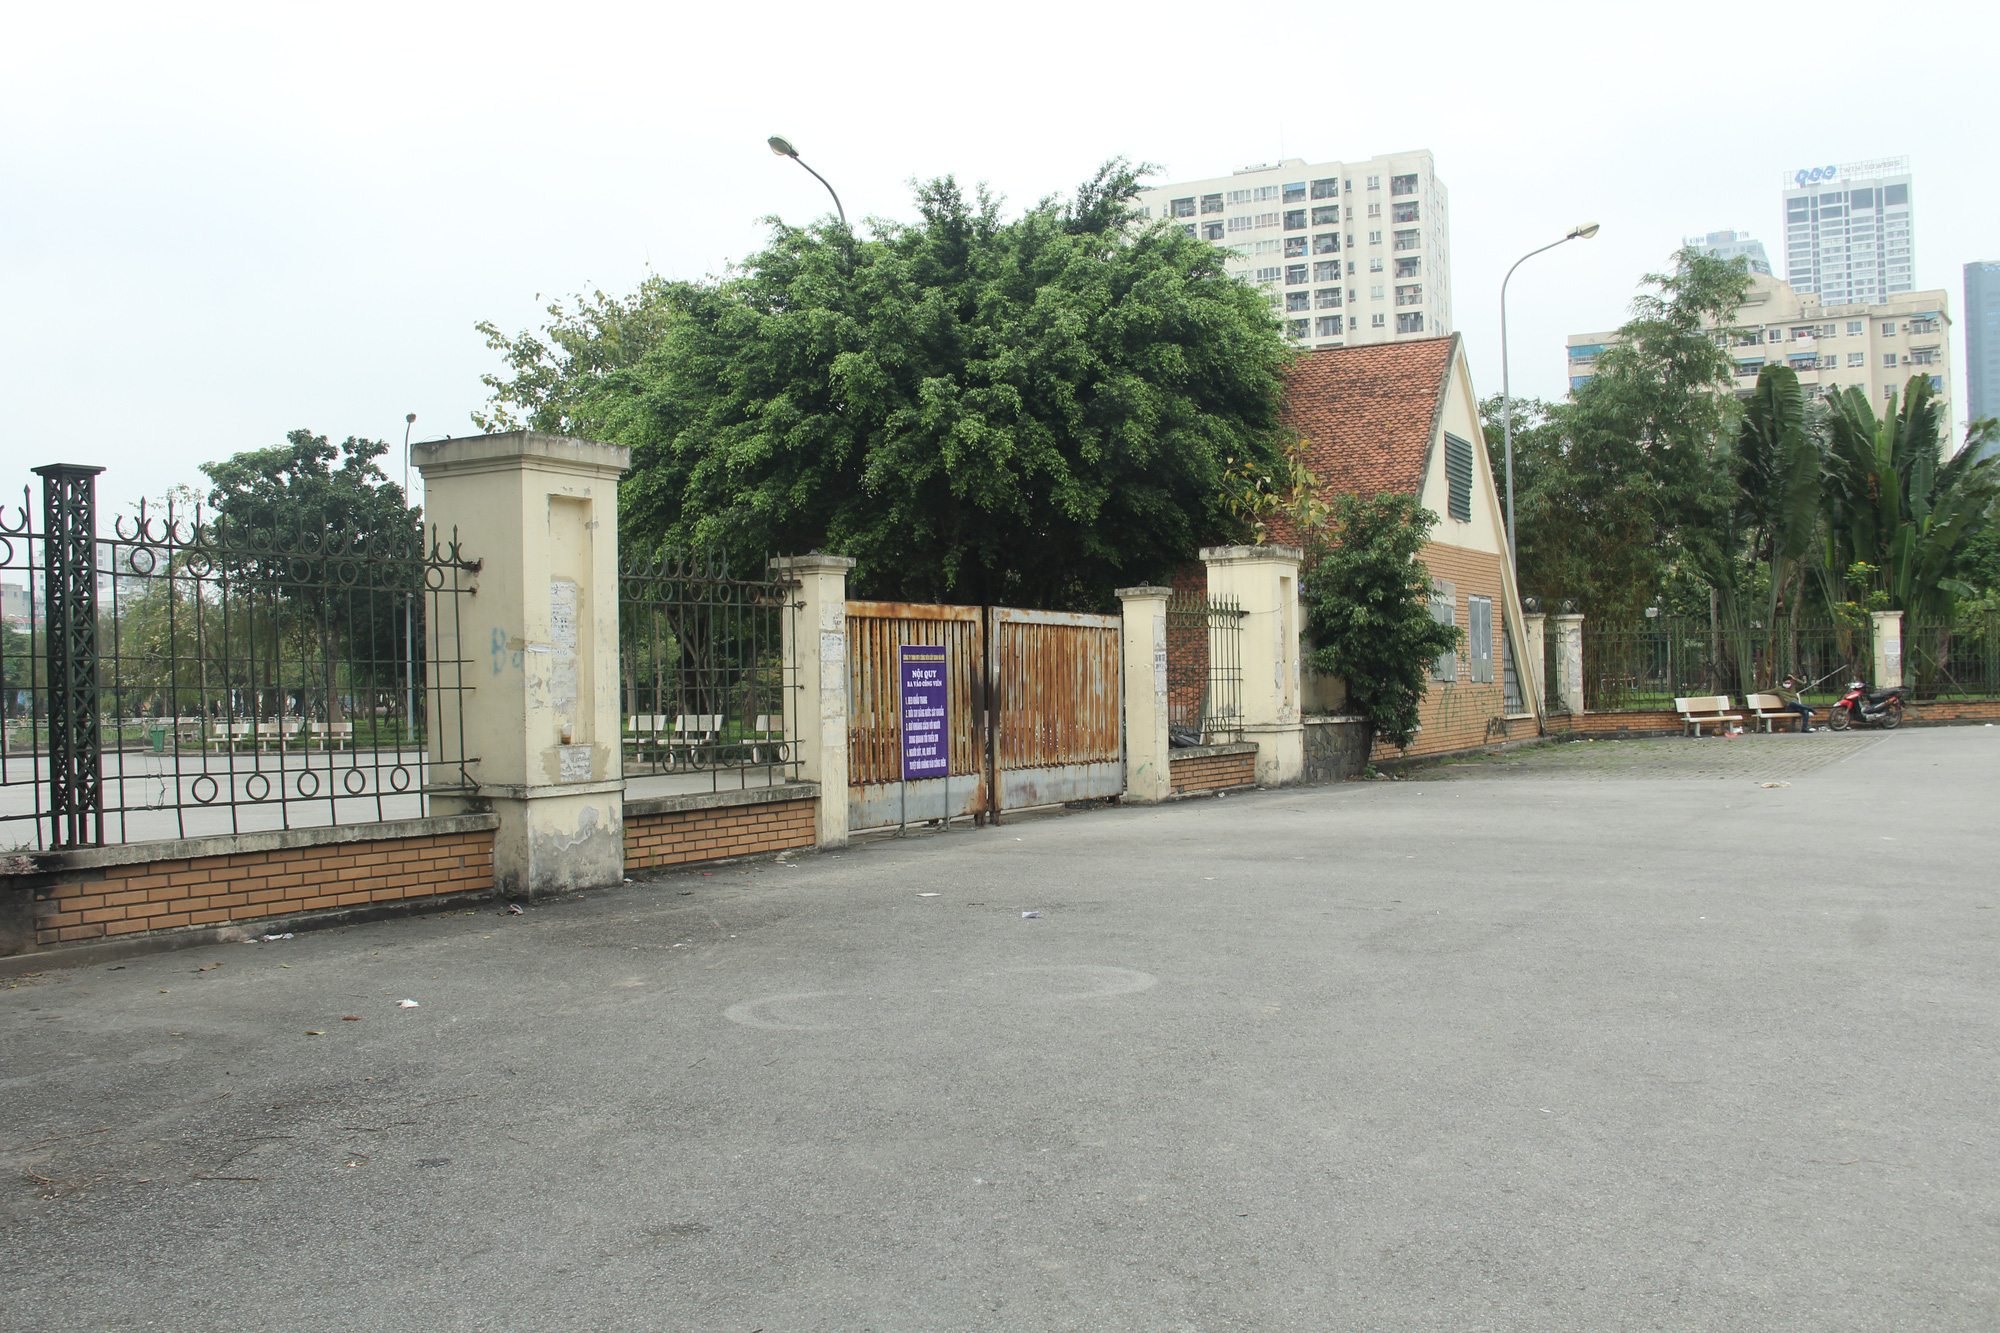 Các công viên lớn tại Hà Nội đồng loạt đóng cửa sau chỉ thị của Chính phủ về việc cách ly xã hội nhằm phòng chống dịch COVID-19 - Ảnh 7.